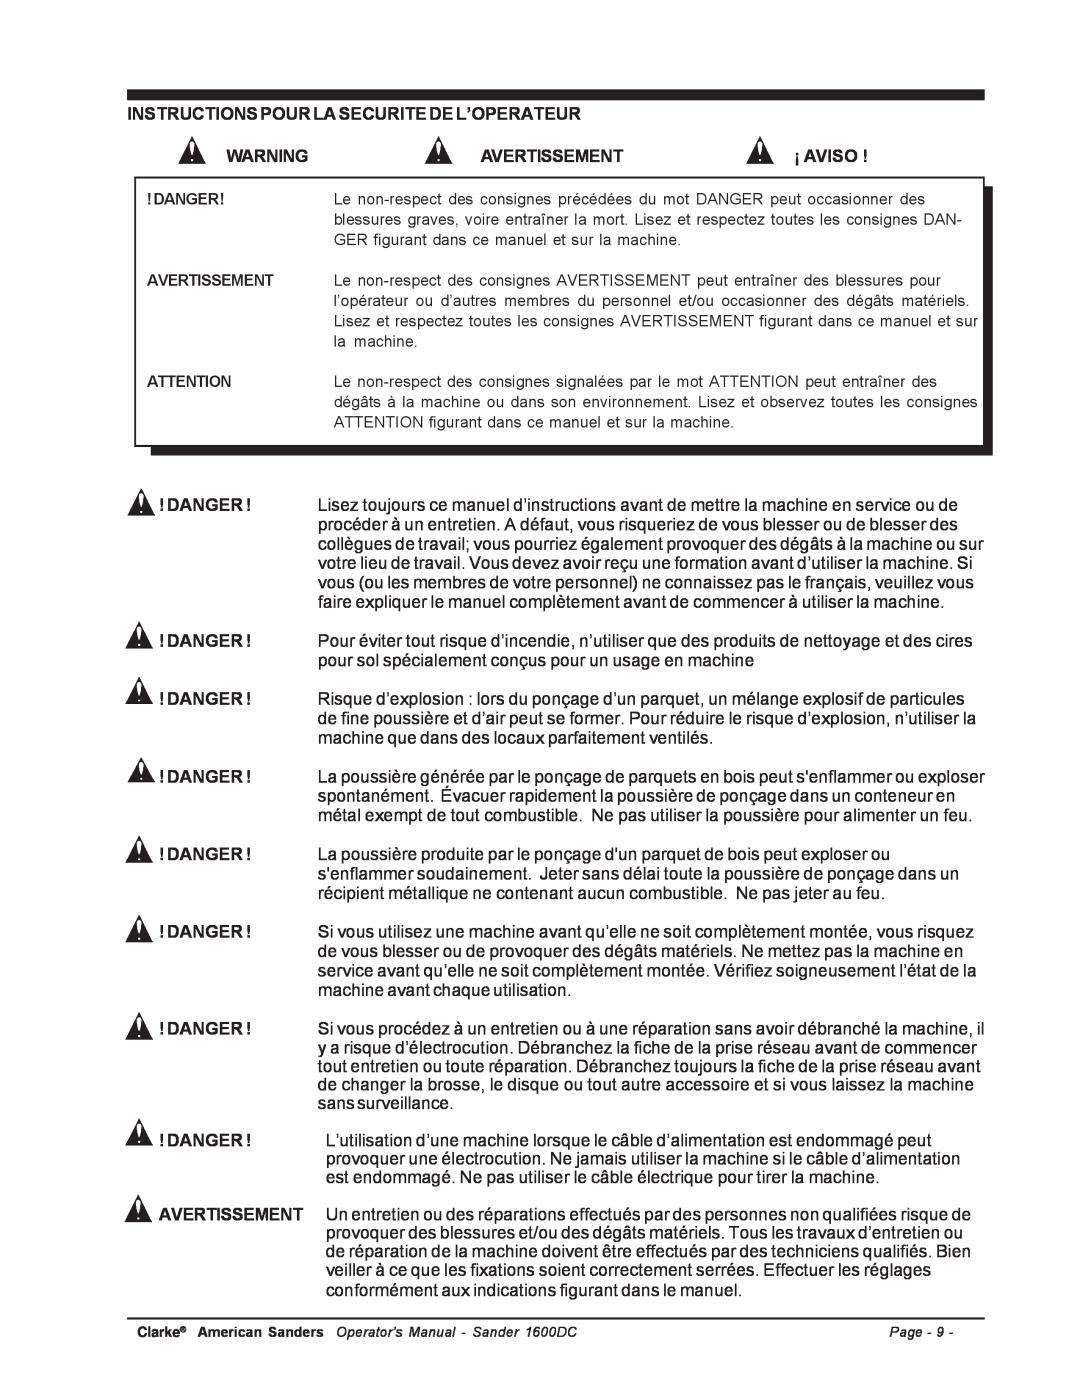 Nilfisk-ALTO C.A.V. 15 manual Instructions Pour La Securite De L’Operateur, Avertissement, ¡ Aviso, Danger 